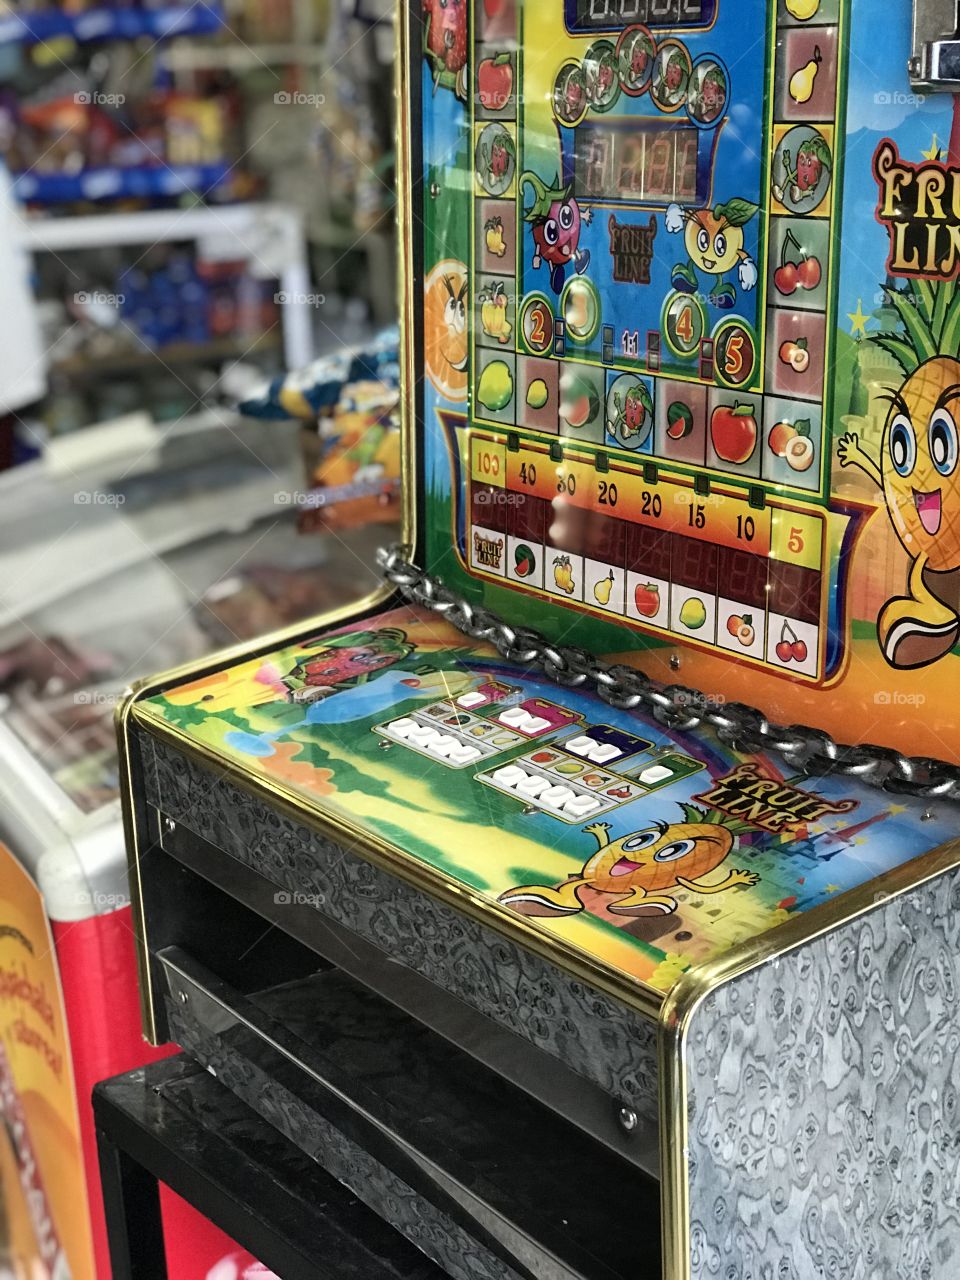 A slot machine inside a Guatemala market 